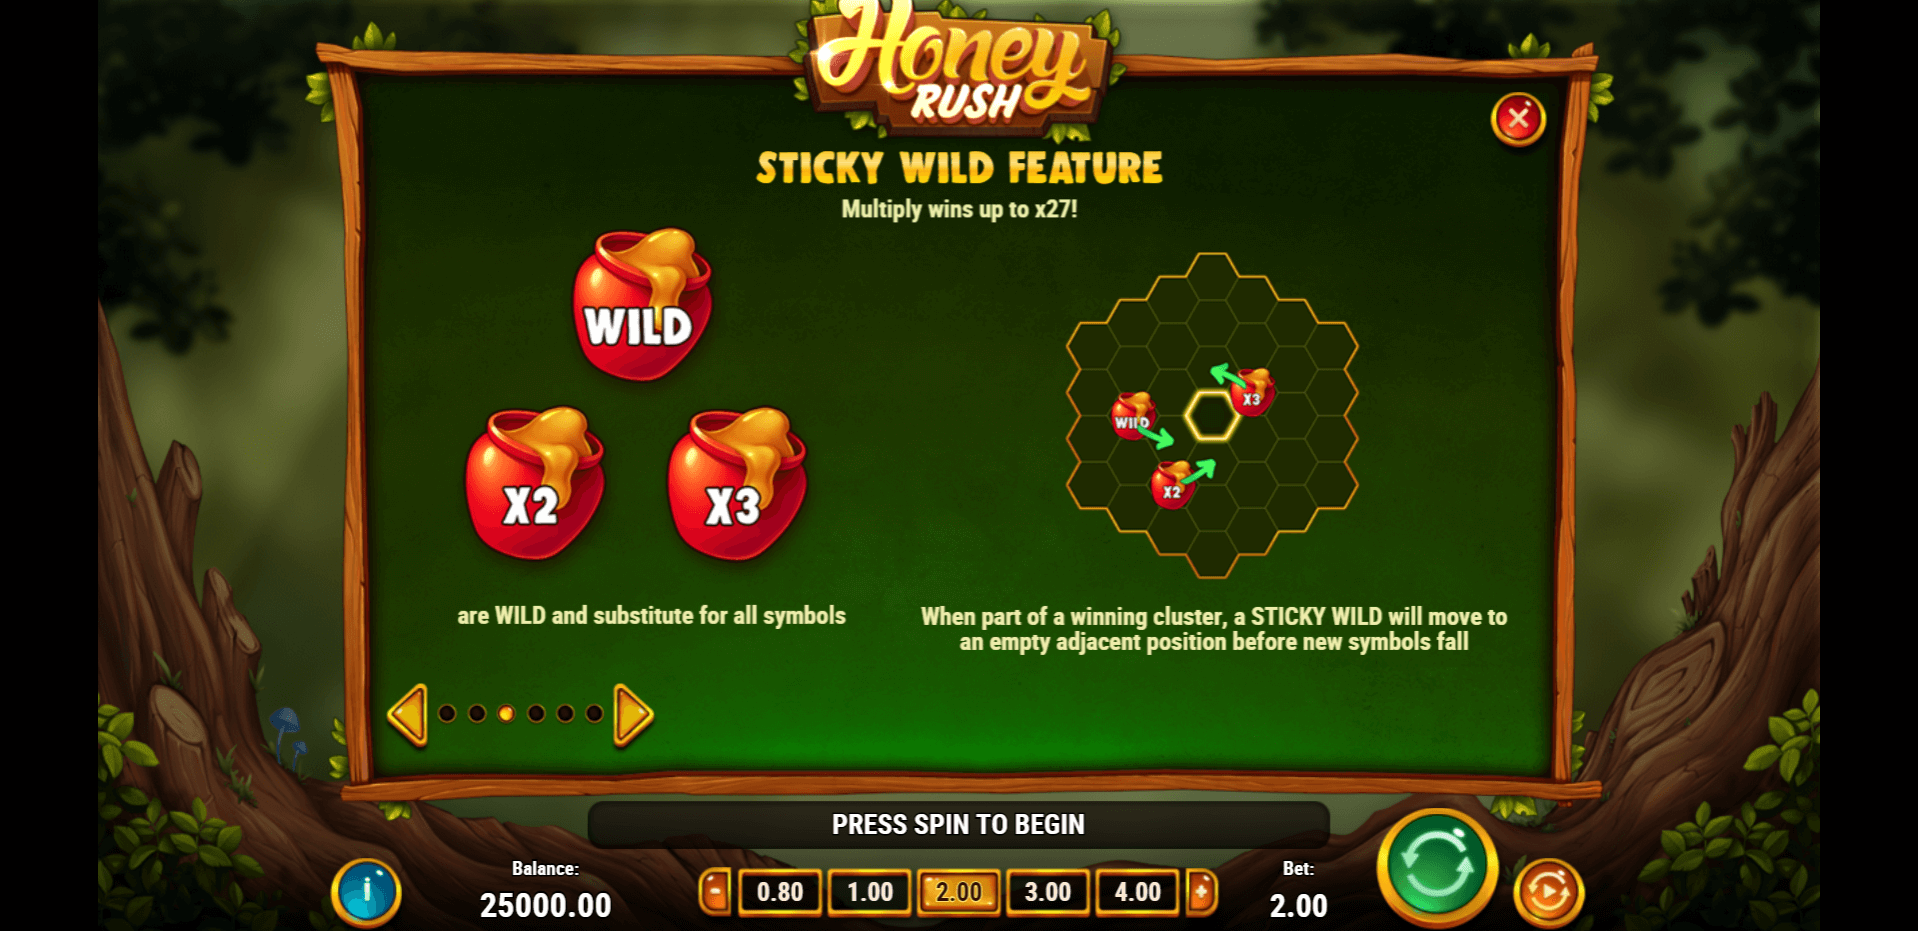 honey rush slot machine detail image 2